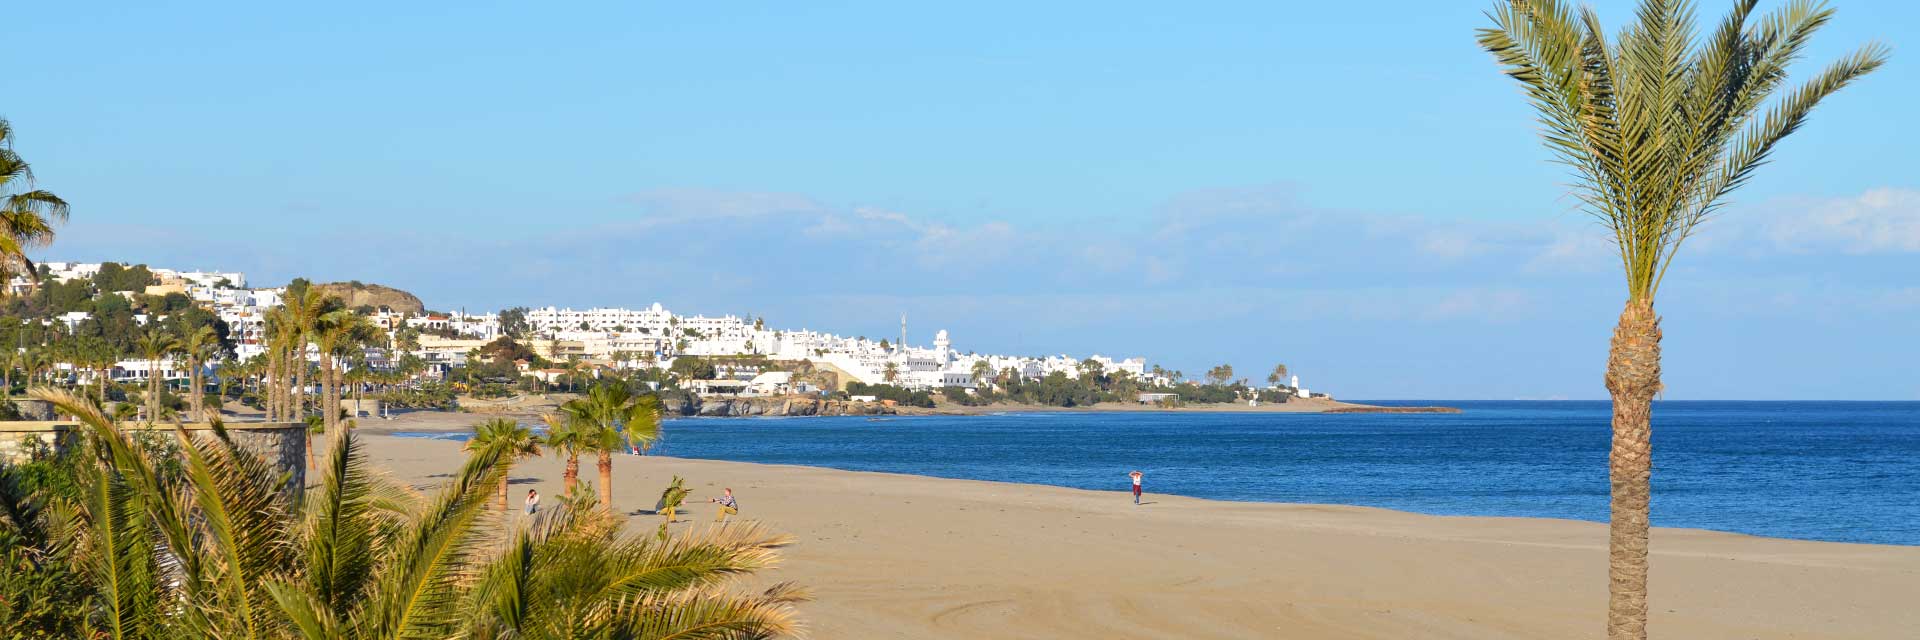 Playas de Mojácar ✅ Litoral de la Costa de Almería